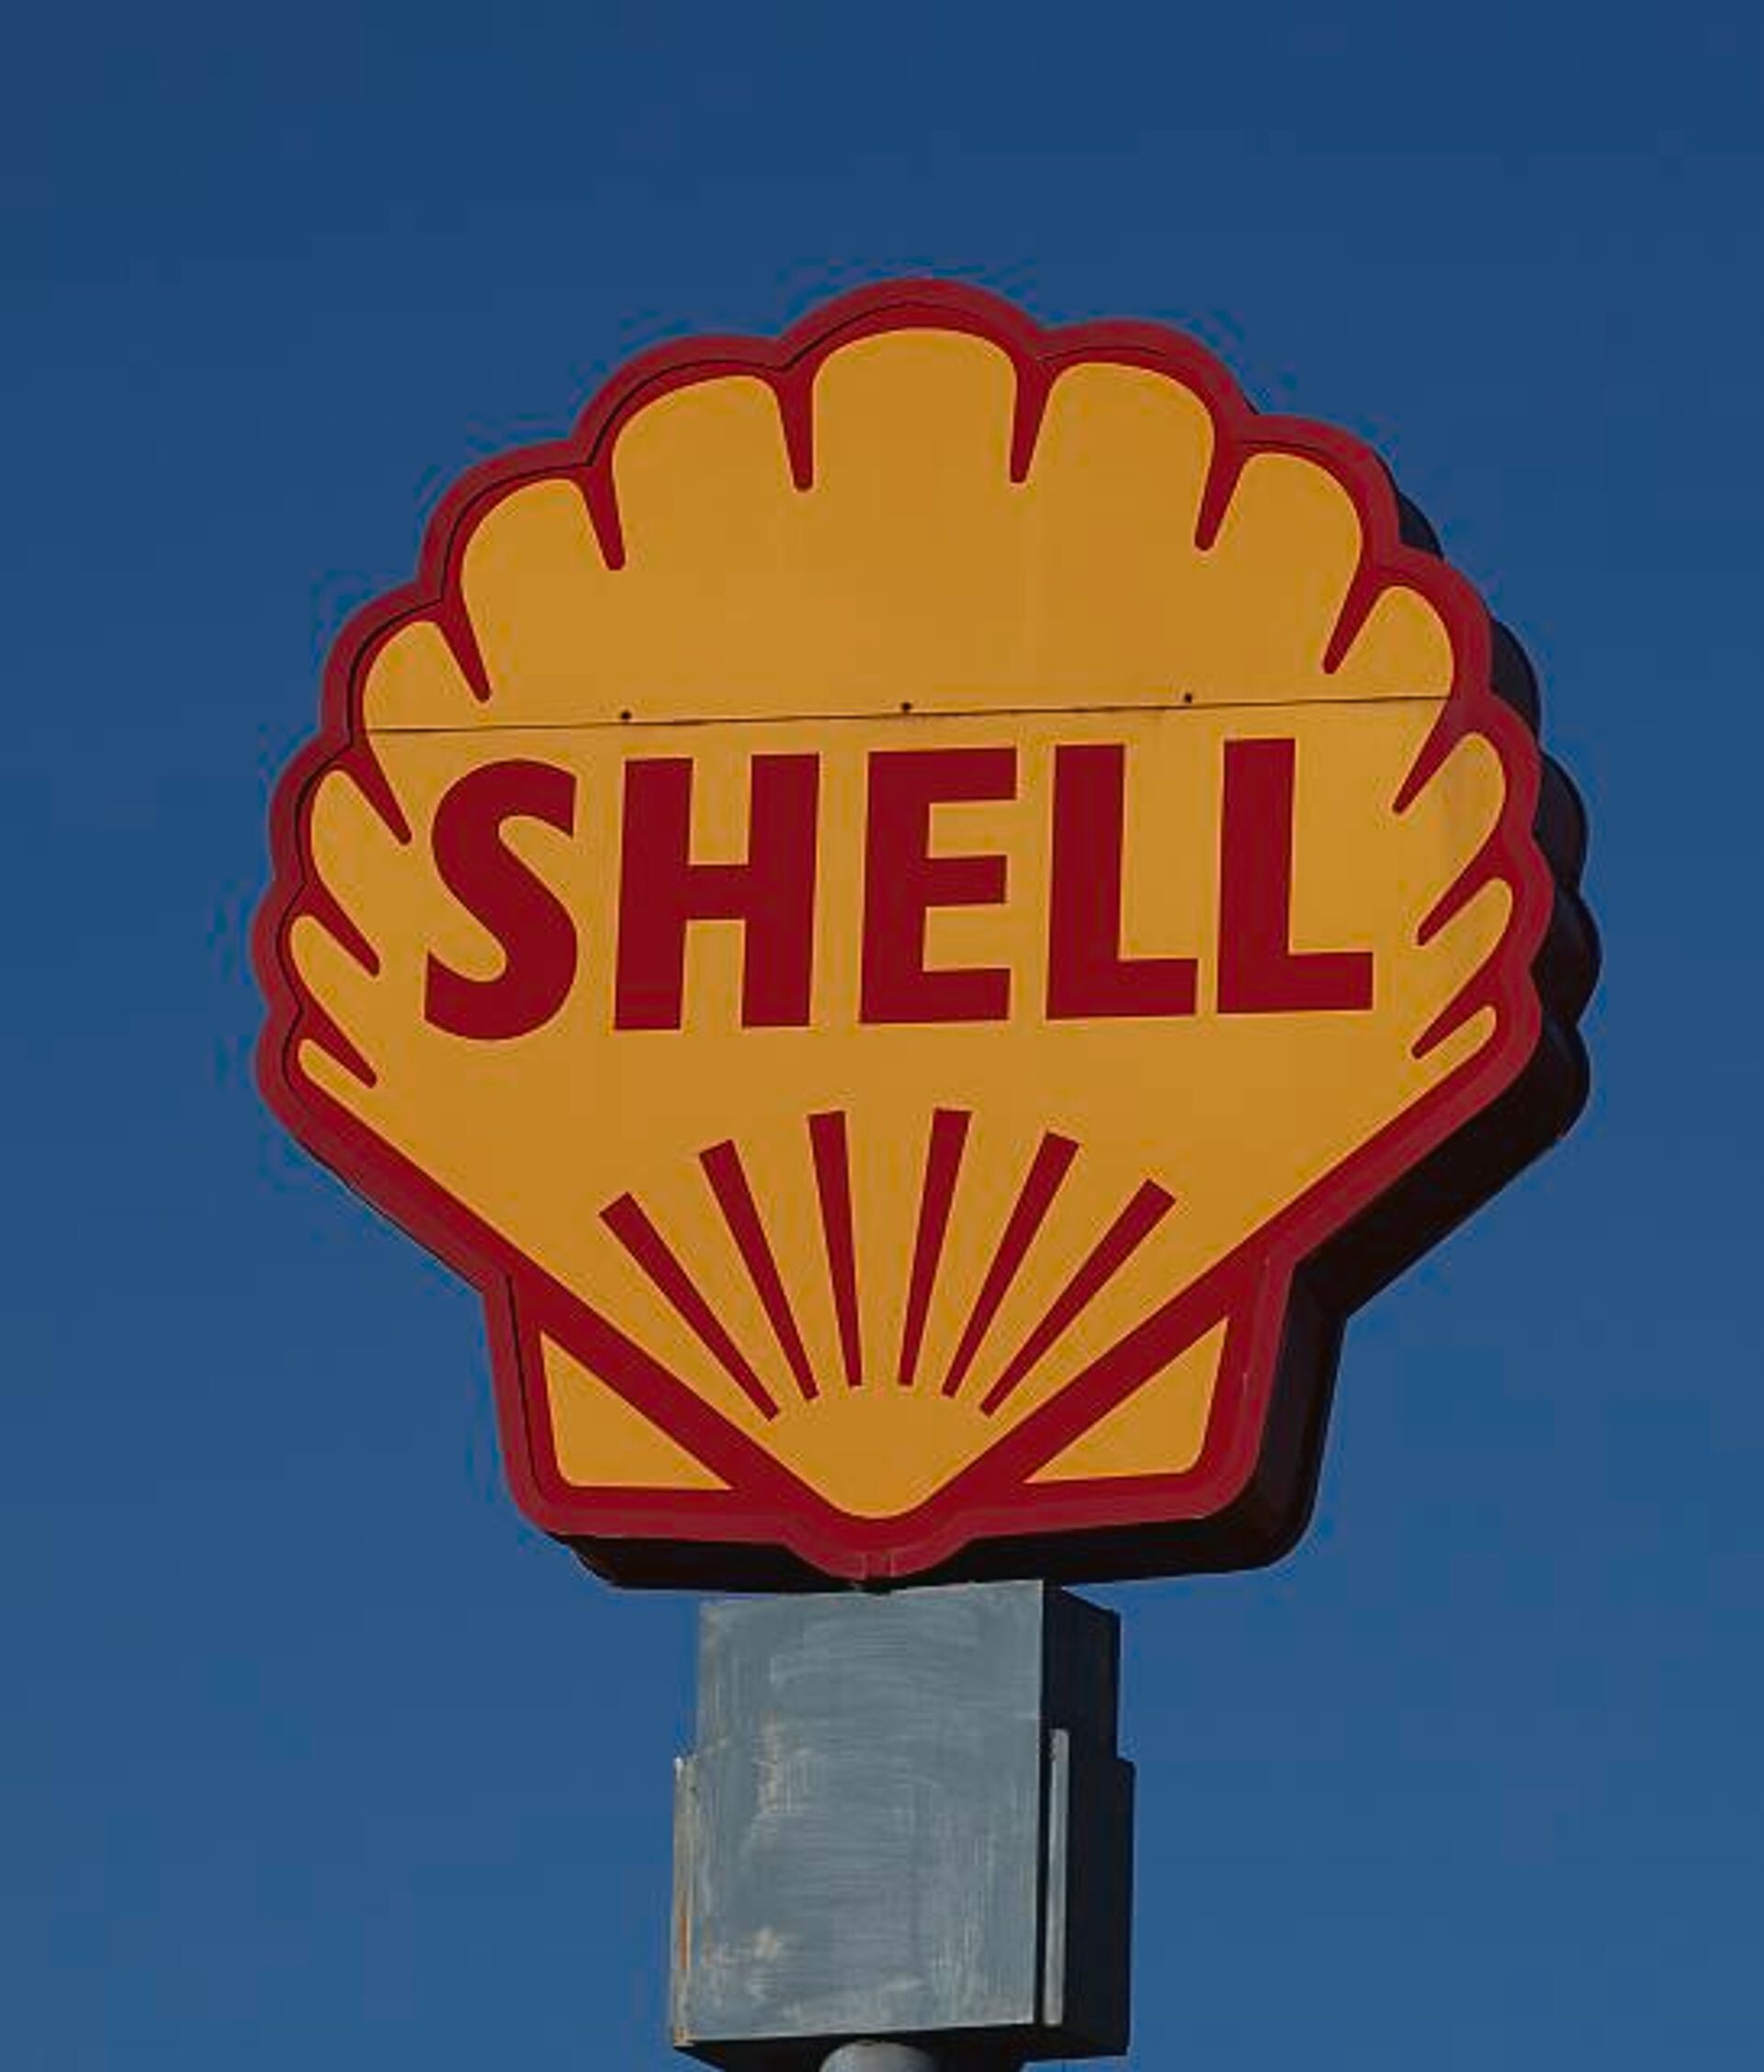 #916 - Shellexit